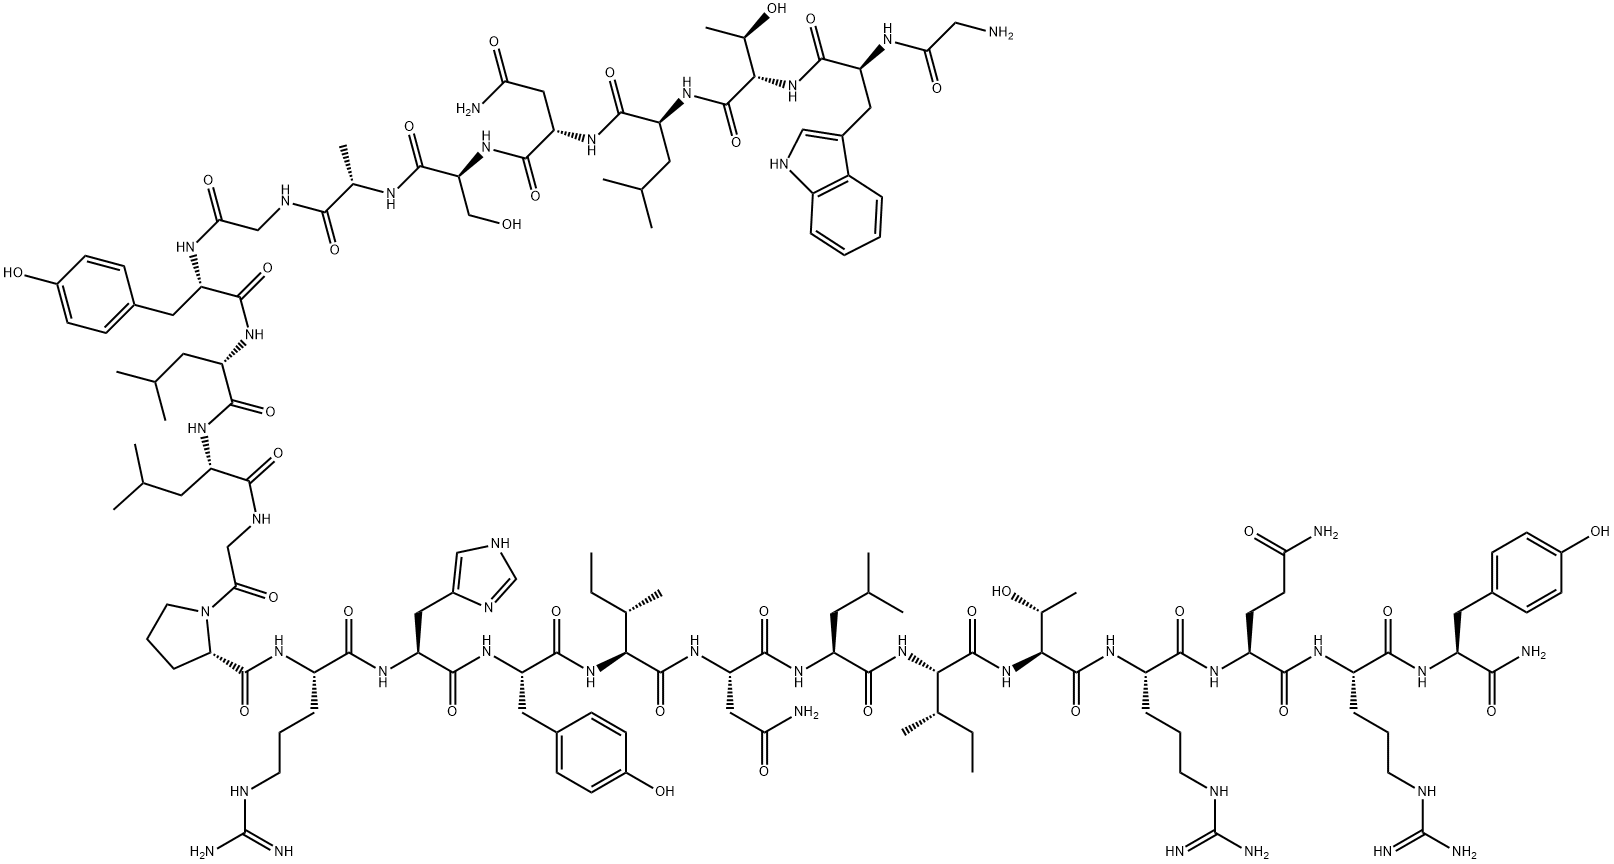 ガラニン(1-13)-ニューロペプチドY (25-36) アミド 化学構造式